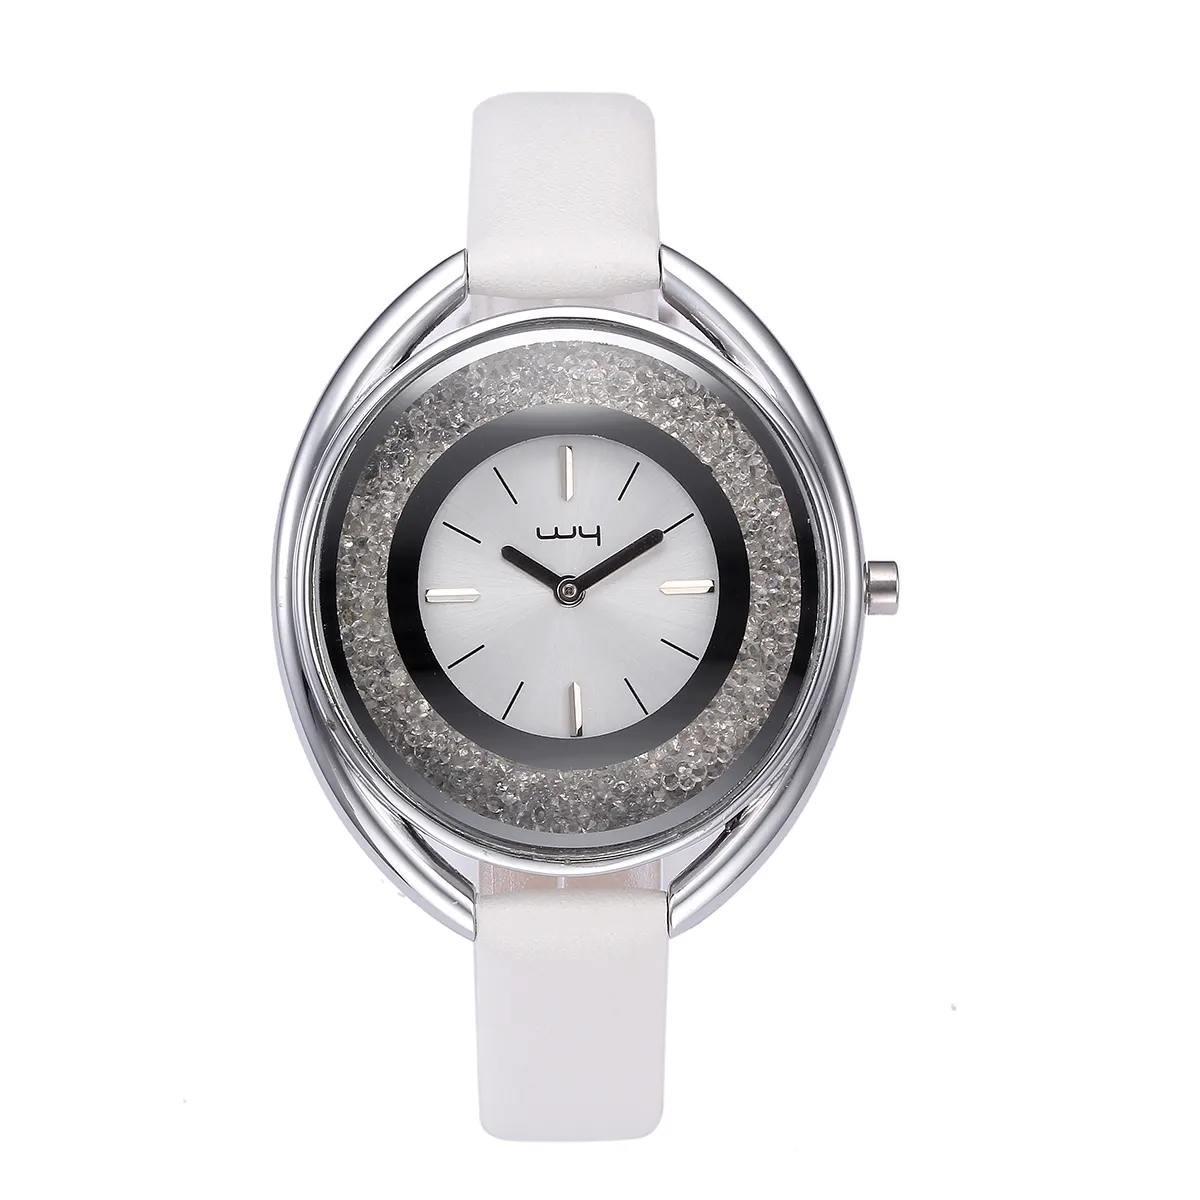 WY-065 часы RAYMONS с овальным лицом, белые Наручные часы reloj montre, женские кварцевые часы с Джем-танганом